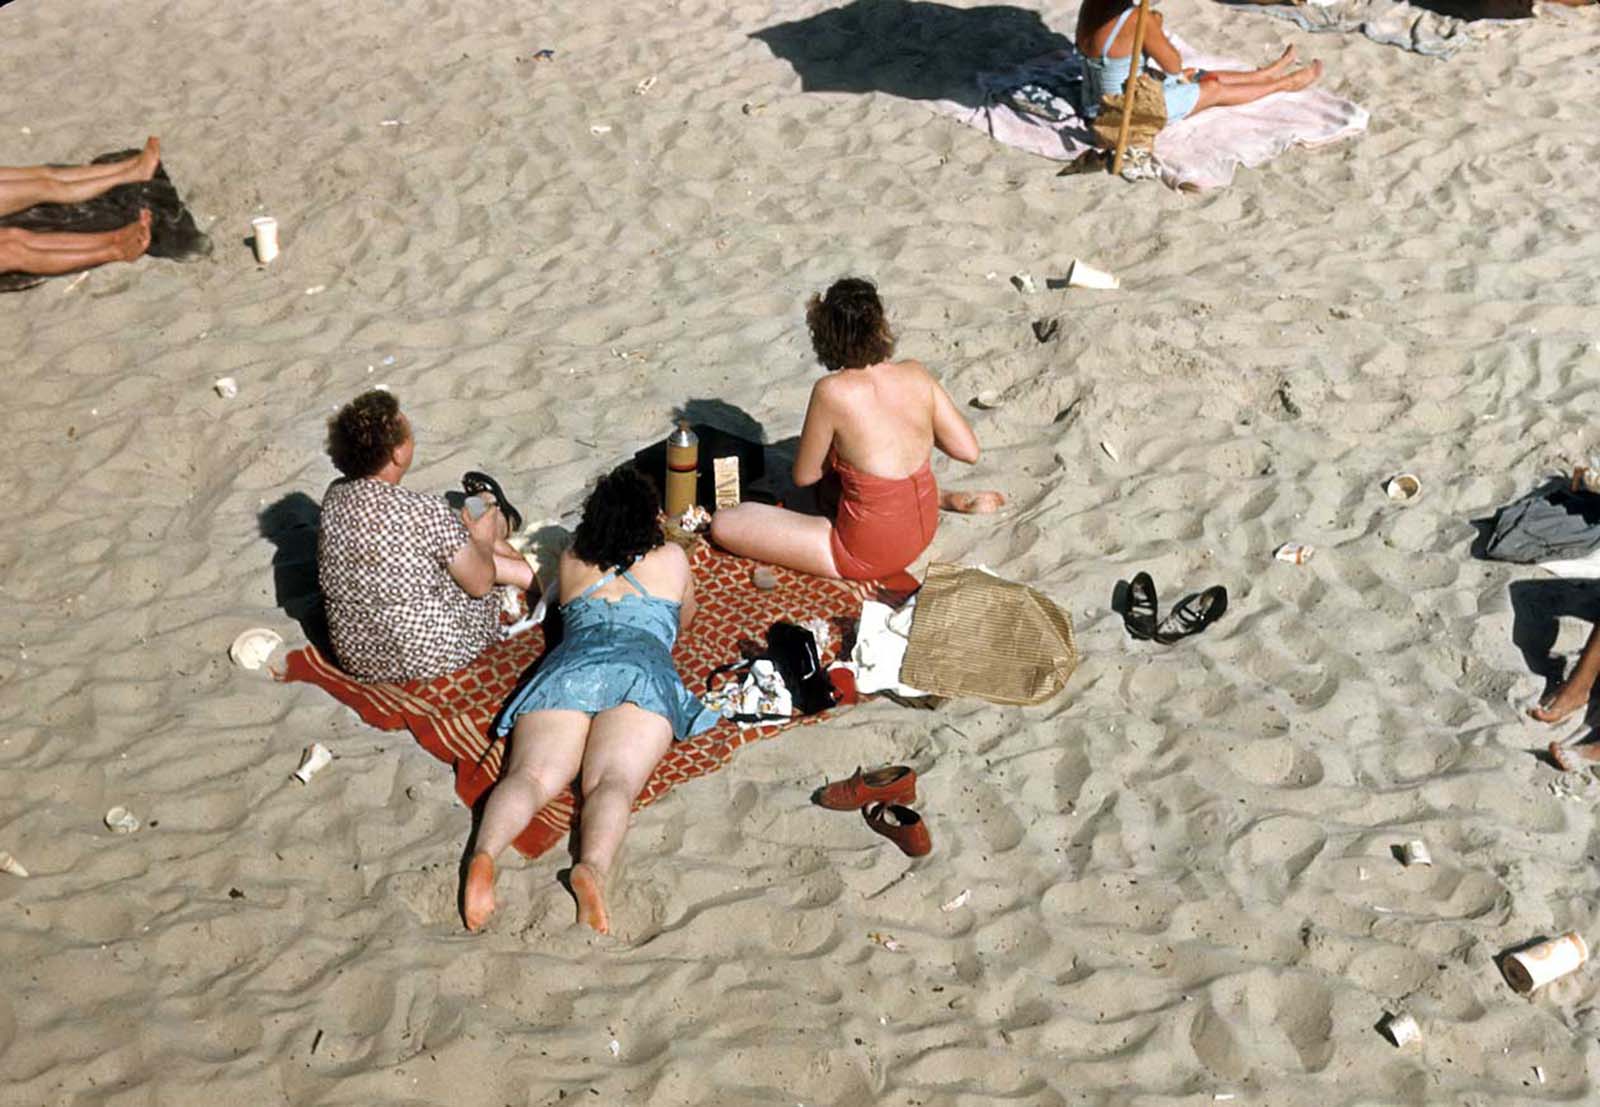 Coney Island dans de vieilles images couleur, 1948